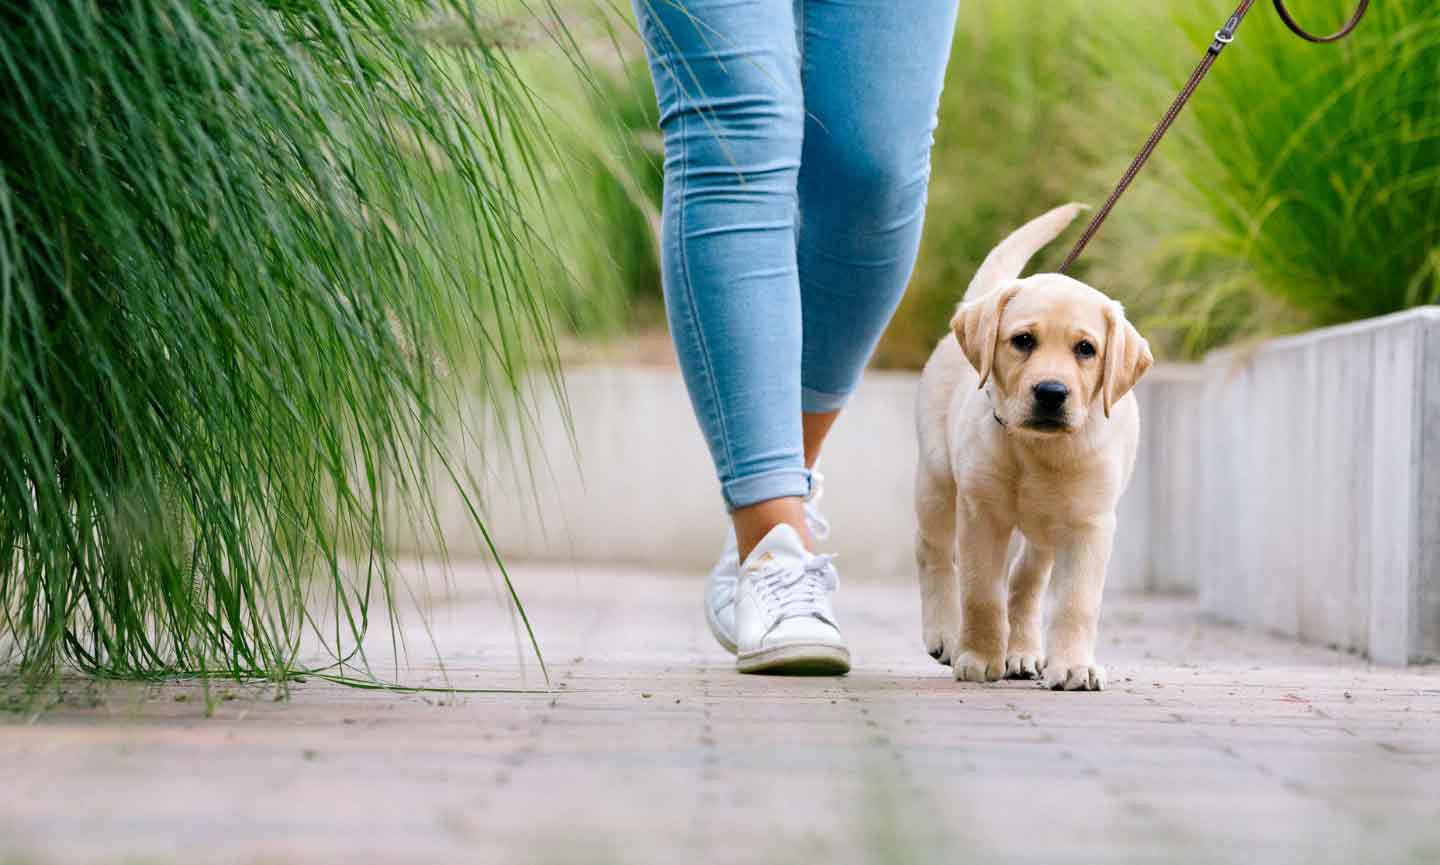 A puppy on a walk